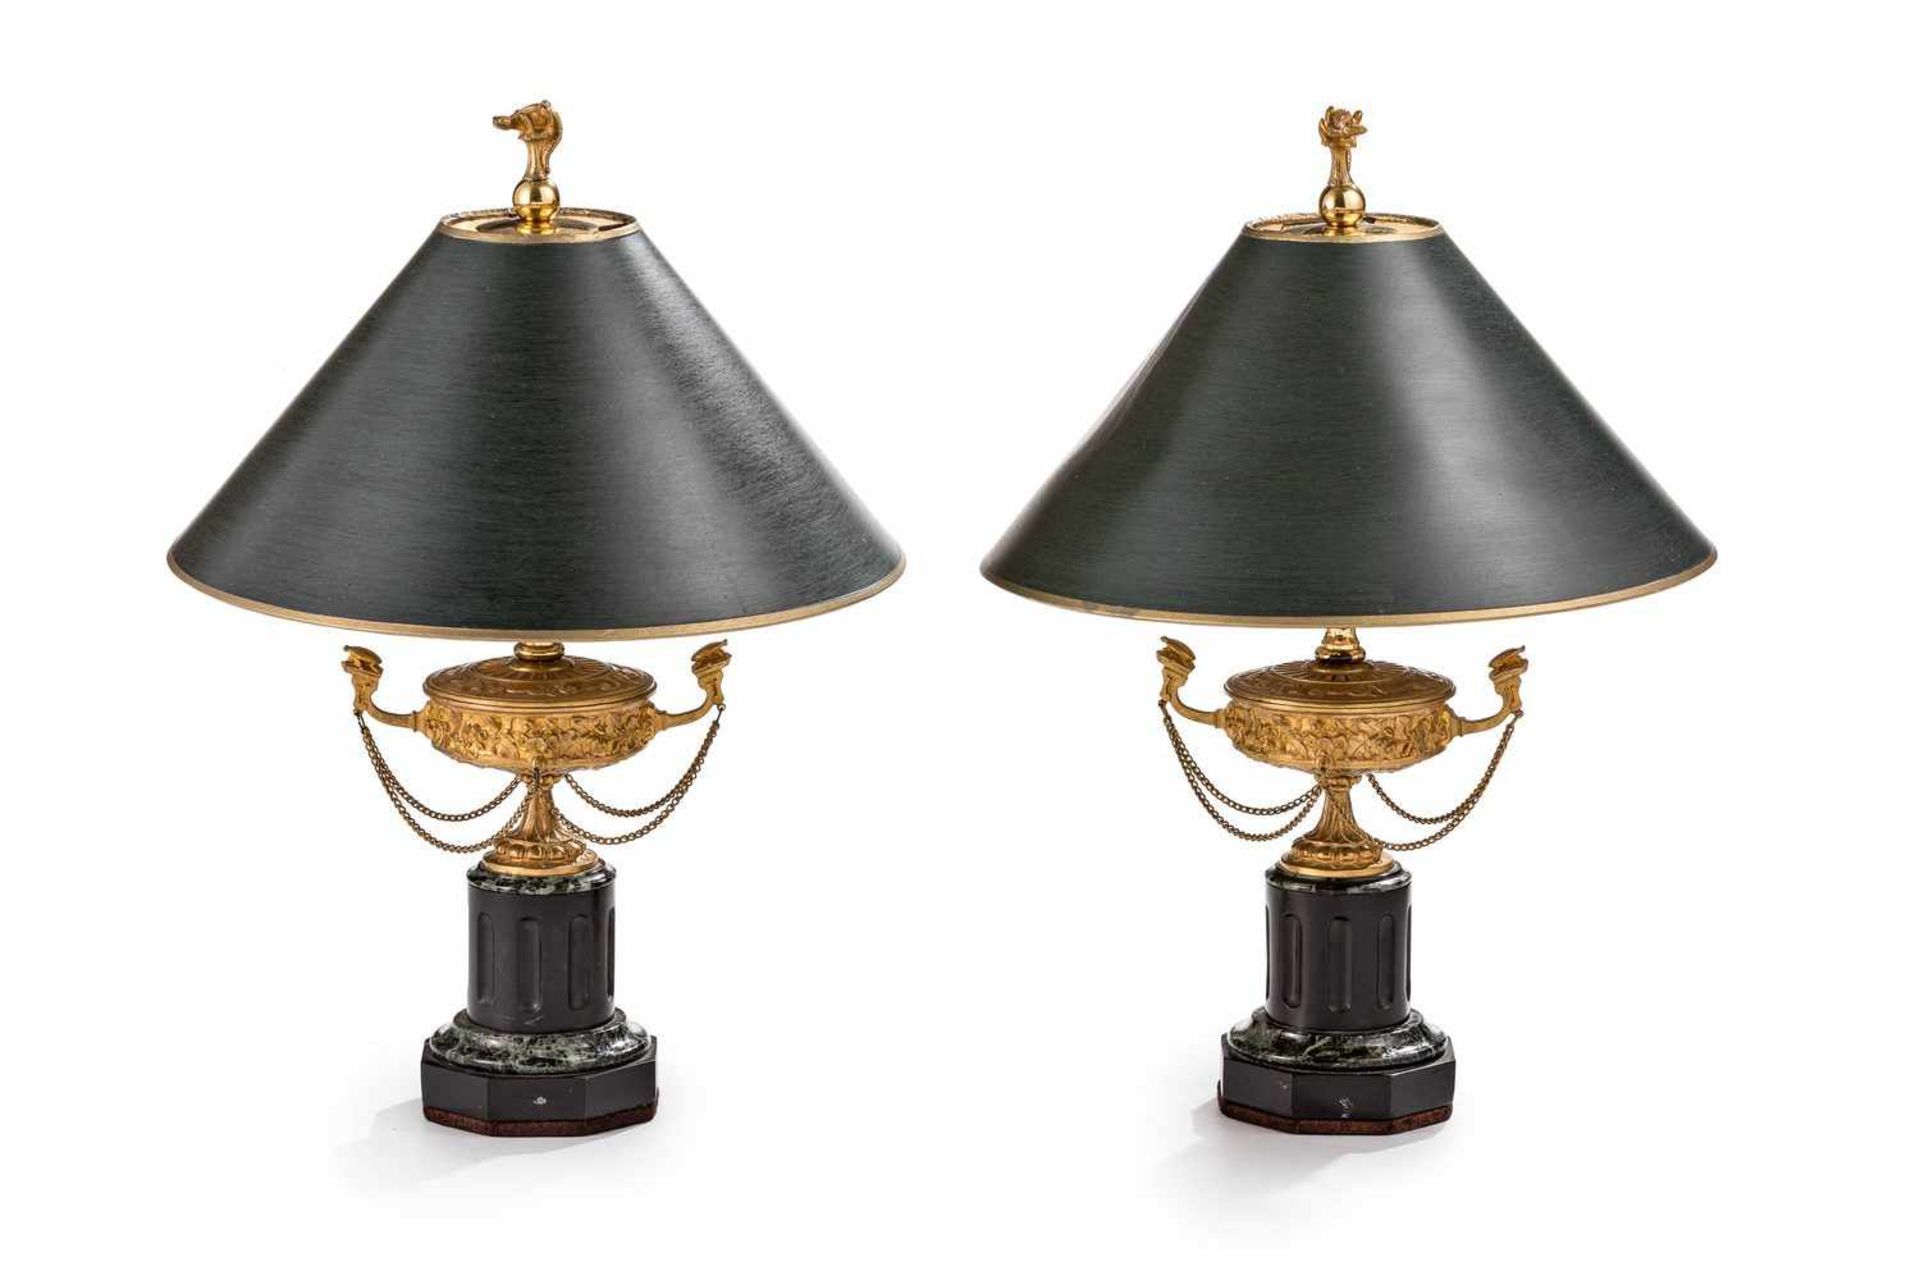 Ein Paar Lampenfüße in Form von Öllampen im klassizistischen StilBronze, vergoldet, schwarzer und